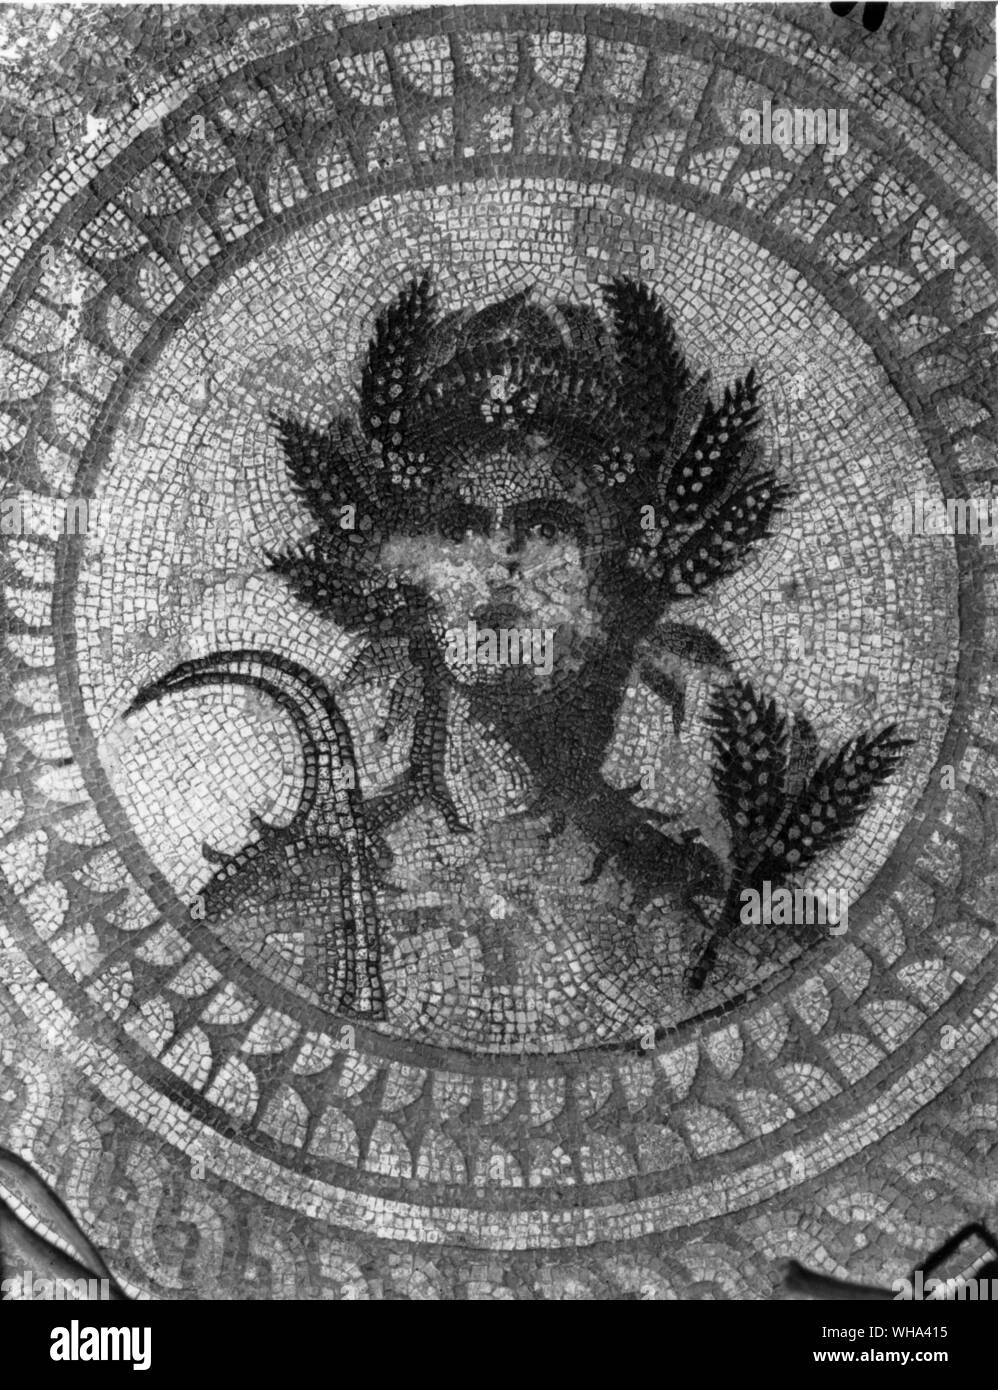 Leiter der Ceres aus der Jahreszeiten Pflaster Cirencester in Dyer Street 1849 gefunden. Ceres, der Tochter des Saturn und der Rhea, Frau - die Schwester von Jupiter, und Mutter von Prosperpina. Ceres ist die Göttin des Getreides, wachsende Pflanzen, und der Liebe, die eine Mutter für ihr Kind. Sie ist die personifizierte und durch Frauen in geheime Rituale auf dem Festival von Ambarvalia, während des Monats Mai gefeiert. Stockfoto